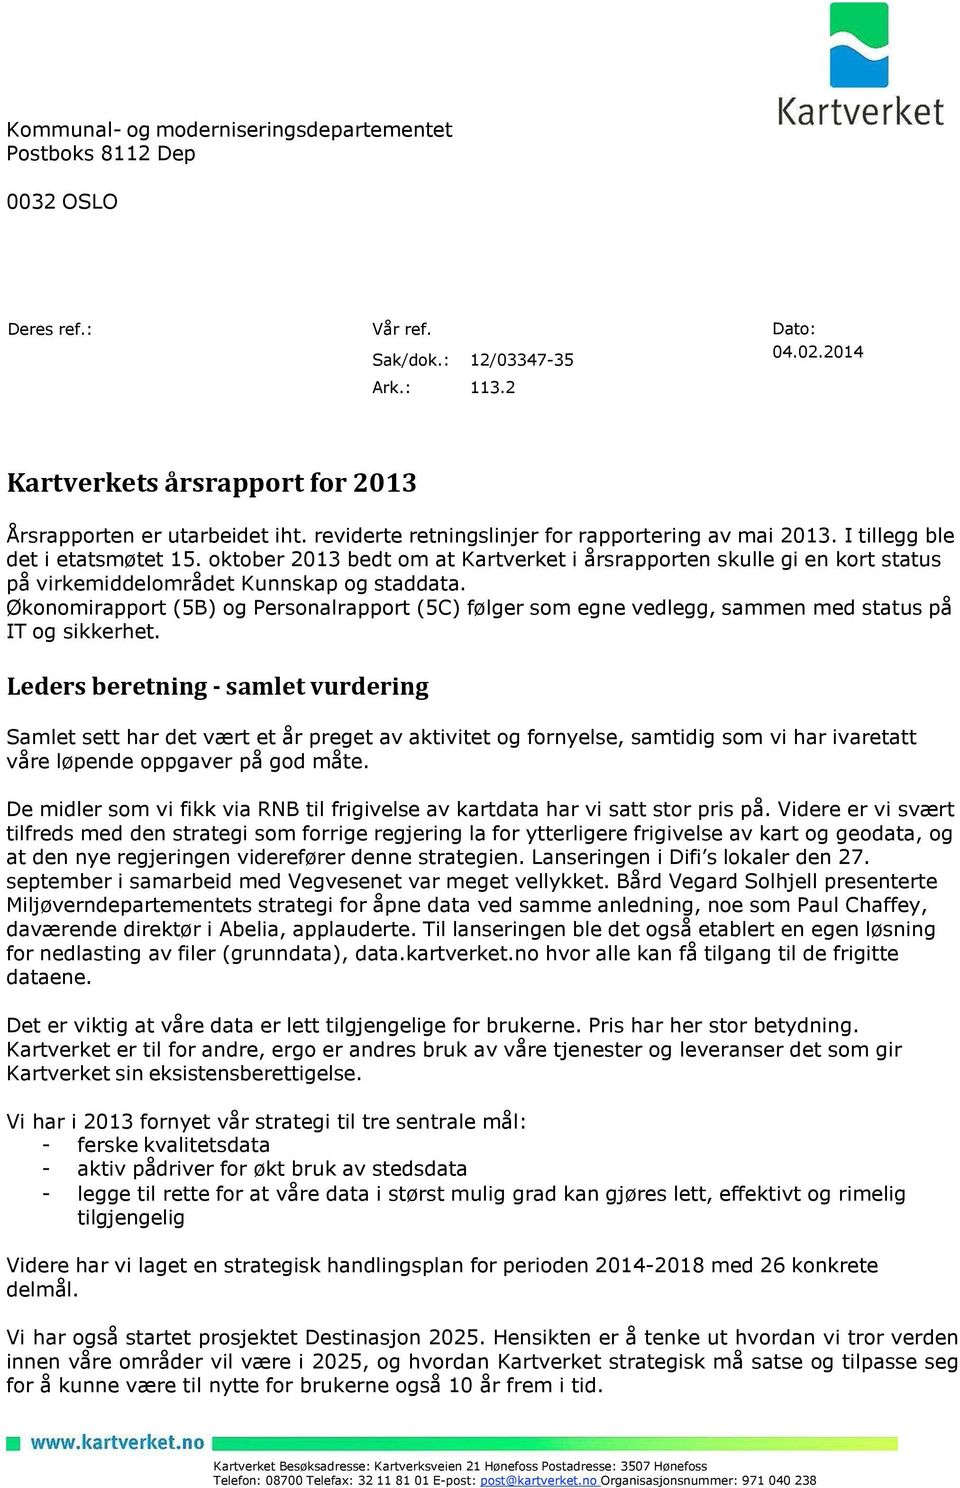 oktober 2013 bedt om at Kartverket i årsrapporten skulle gi en kort status på virkemiddelområdet Kunnskap og staddata.